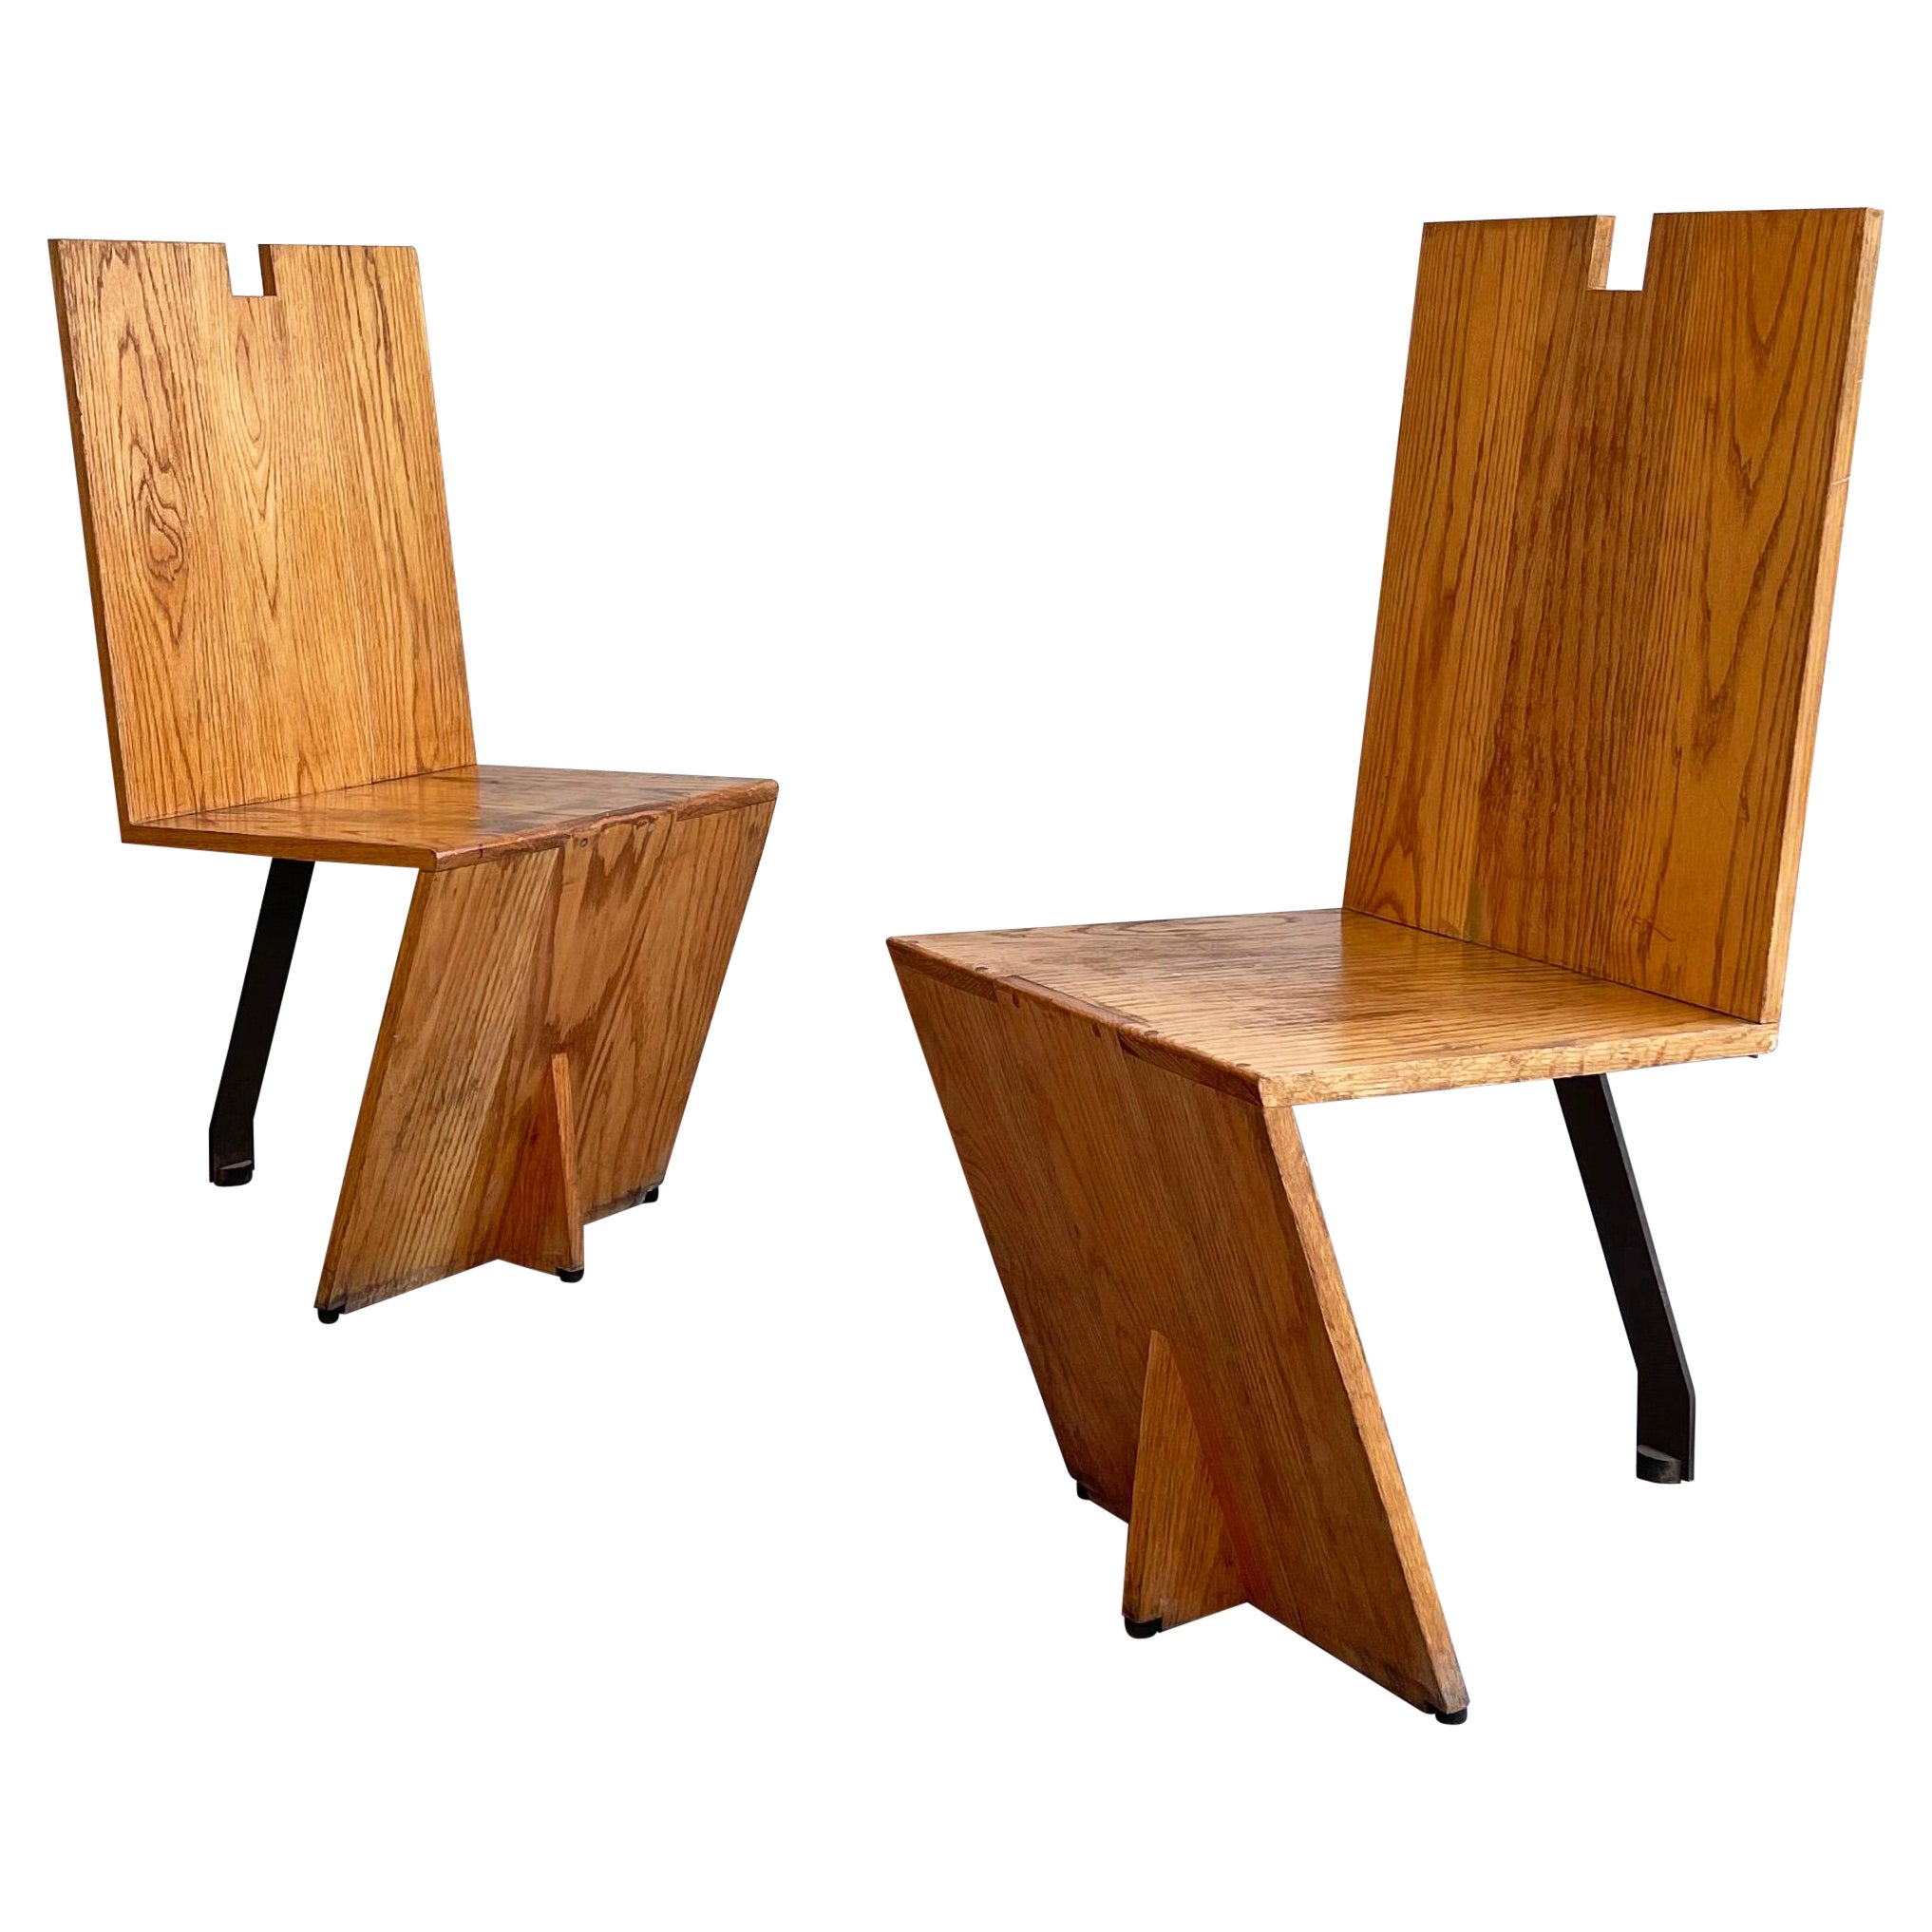 Postmoderne, handwerklich gefertigte, kantige Stühle aus Eiche und Stahl